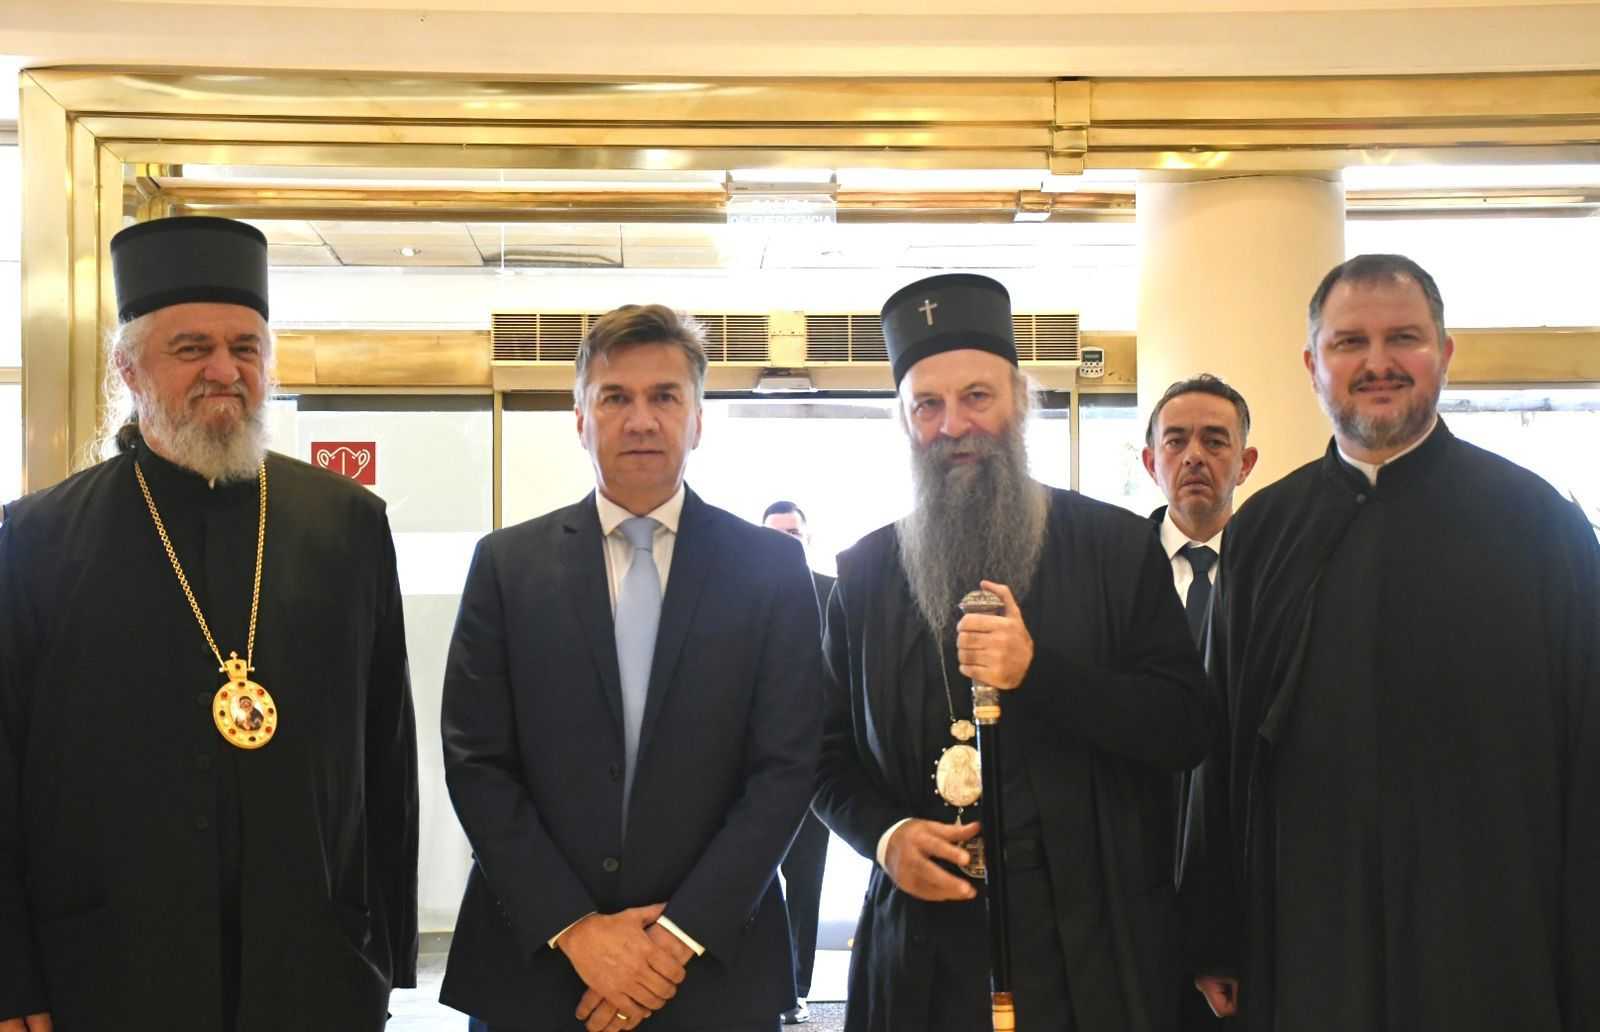 Zdero mantuvo un encuentro diplomático con con el patriarca de la Iglesia Ortodoxa Serbia